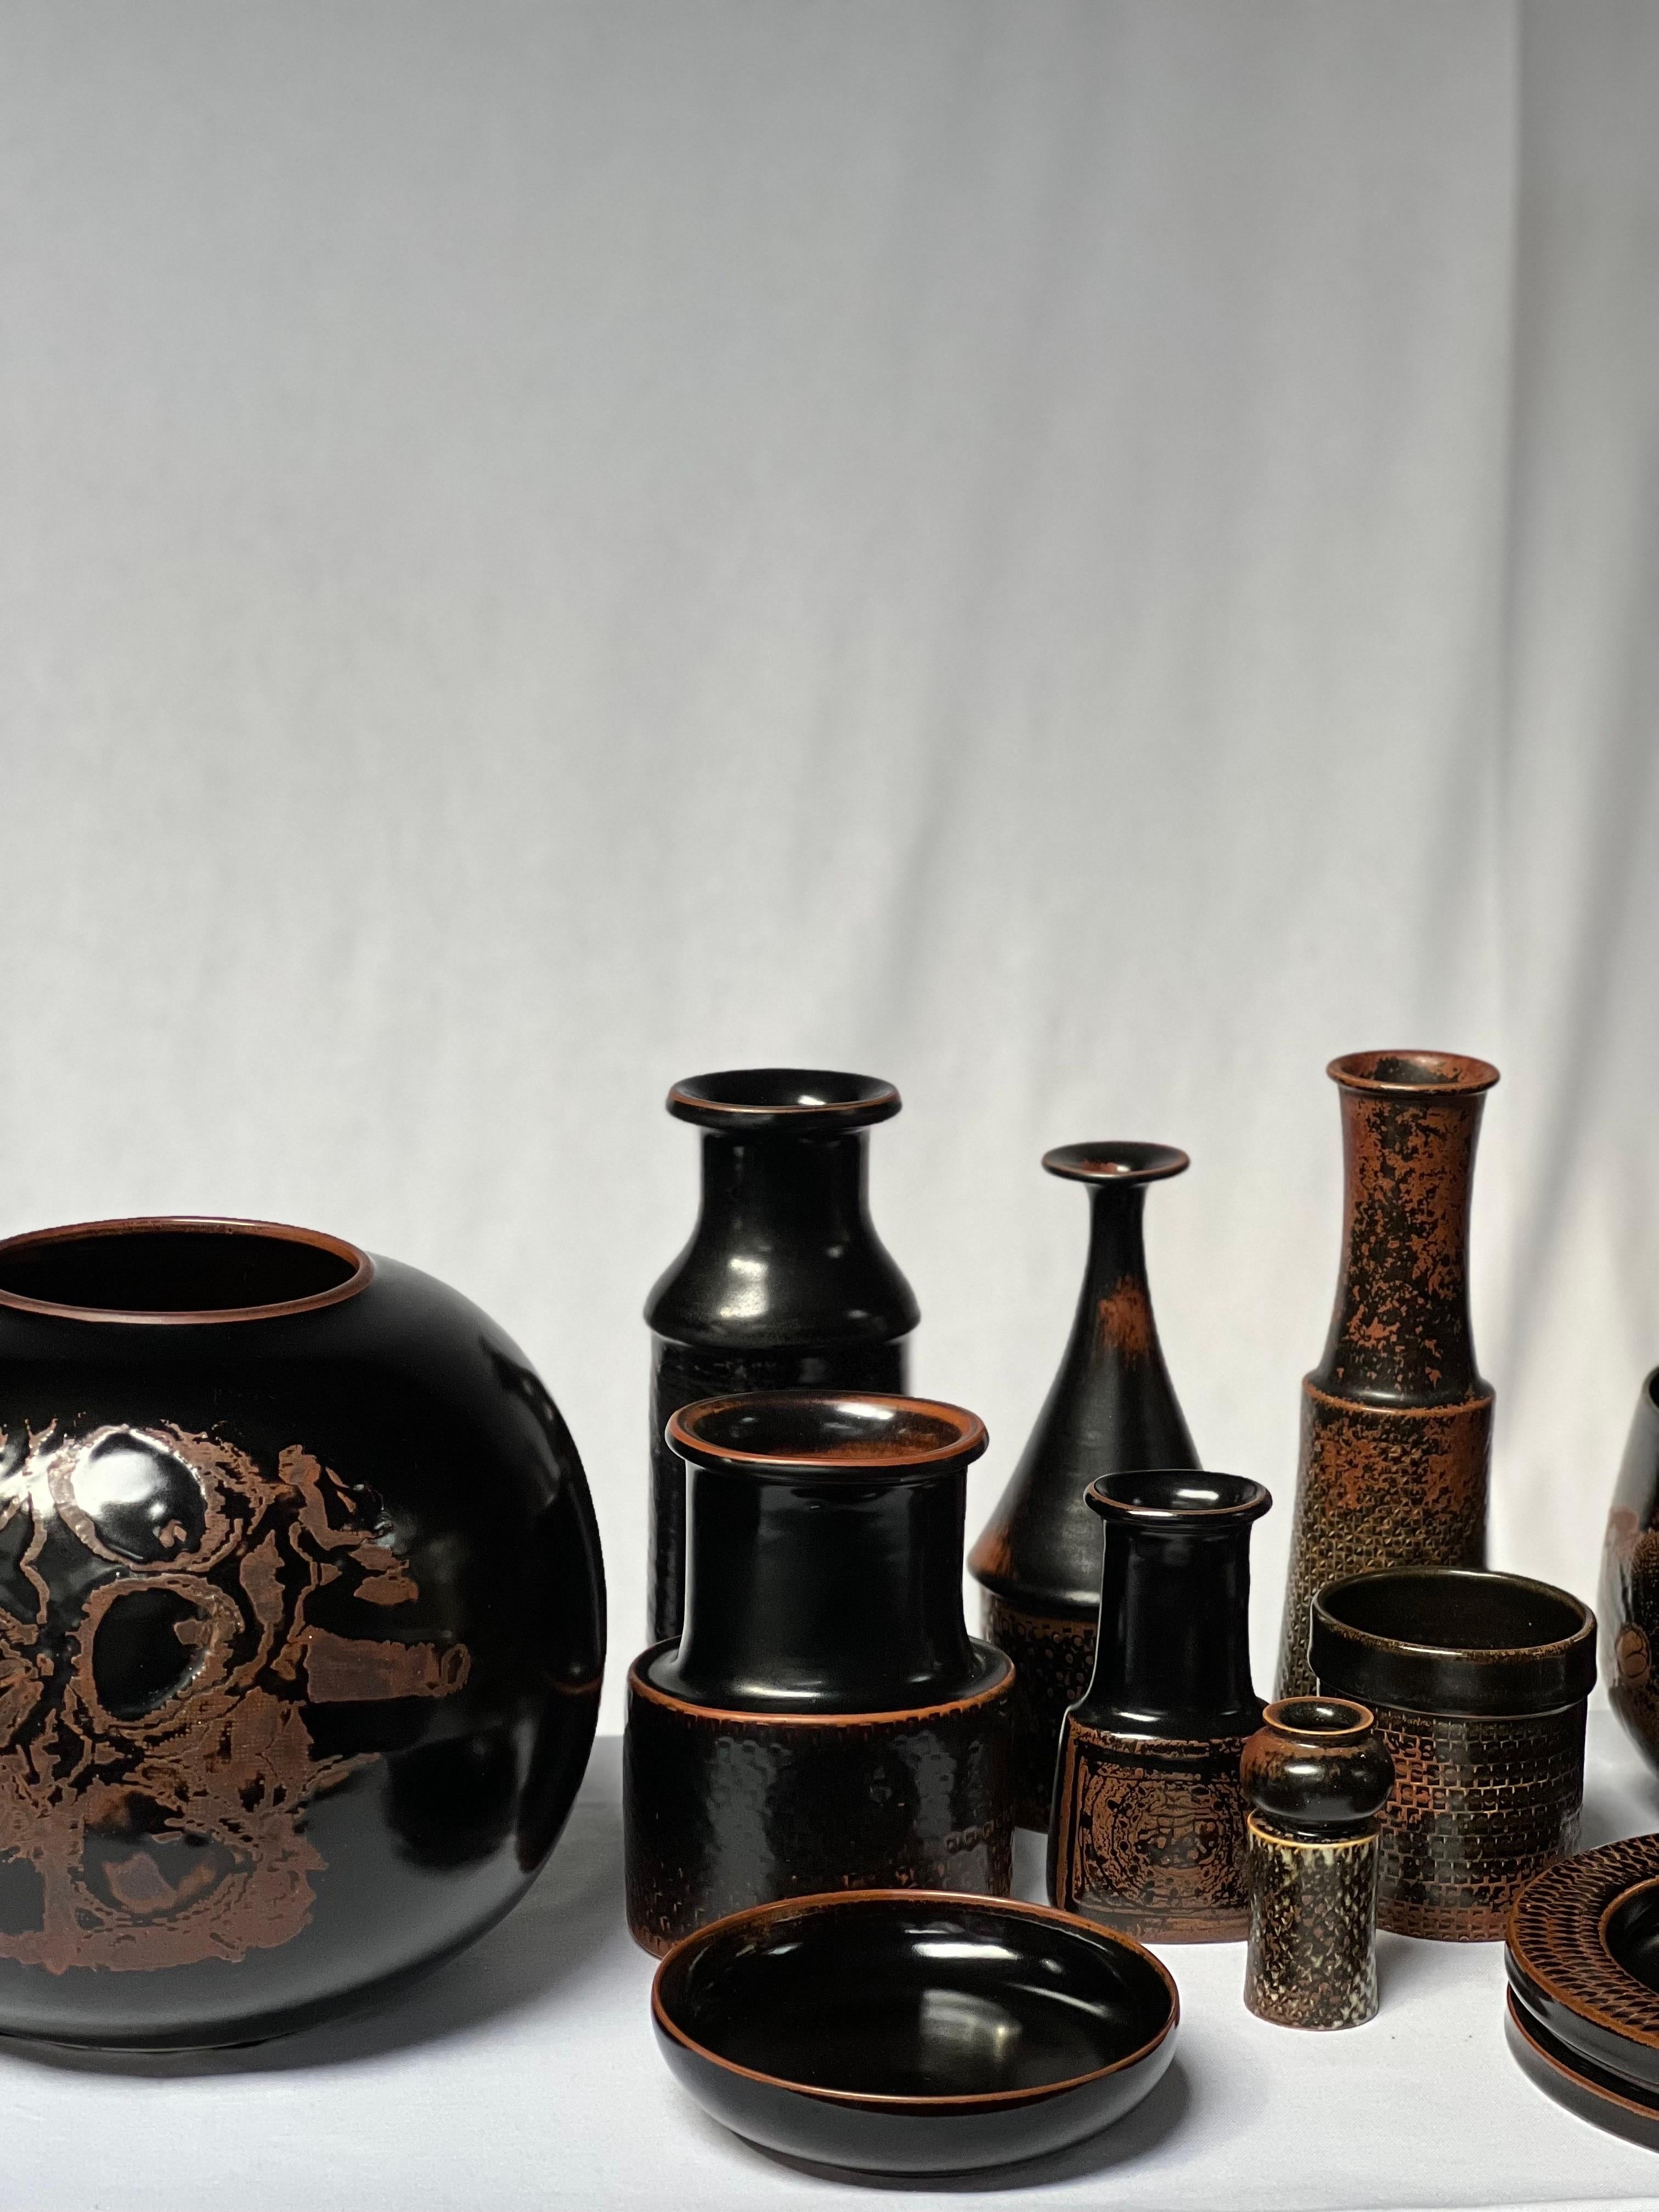 Stig Lindberg Unique Vase in black Glaze Tenmoku Made by Hand Sweden 1964 For Sale 6